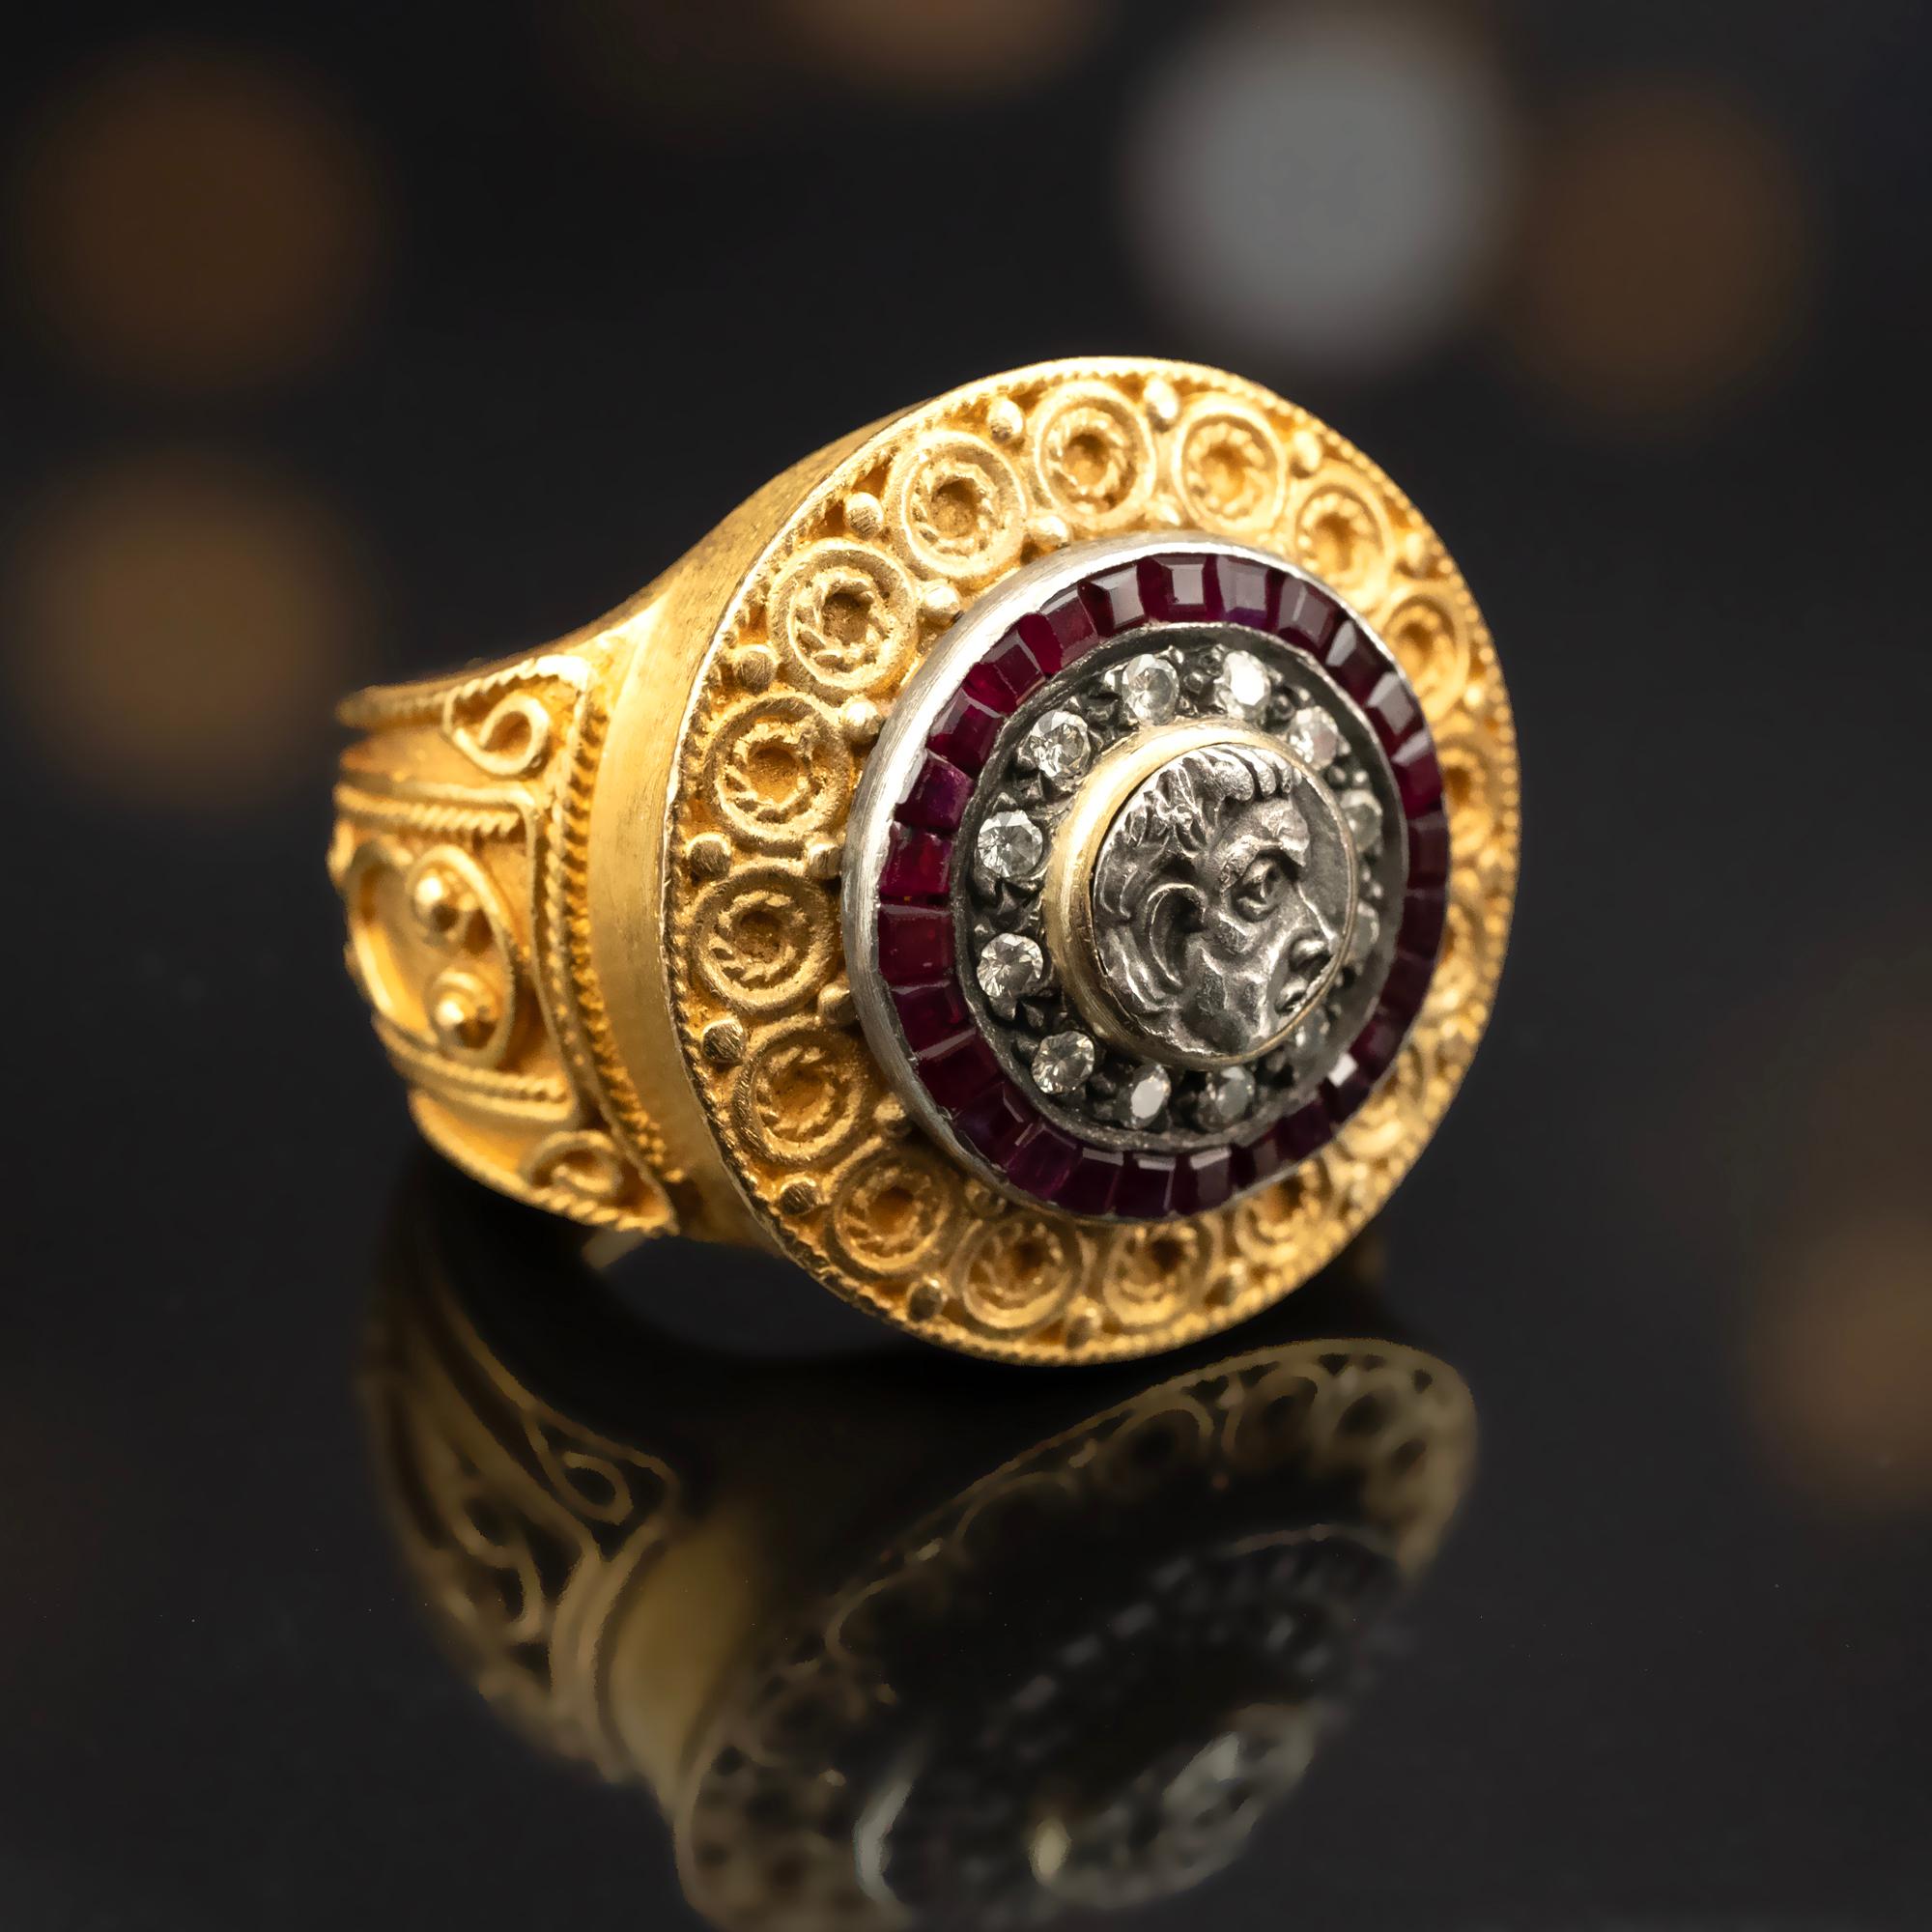 Dieser handgefertigte Ring im byzantinischen Stil aus reichhaltigem 22-karätigem Gold hat ein beeindruckendes Gewicht von 27 Gramm und verleiht Ihrem Ensemble einen substanziellen Charakter. Ein Teil einer antiken Münze, gefasst in Silber, steht im